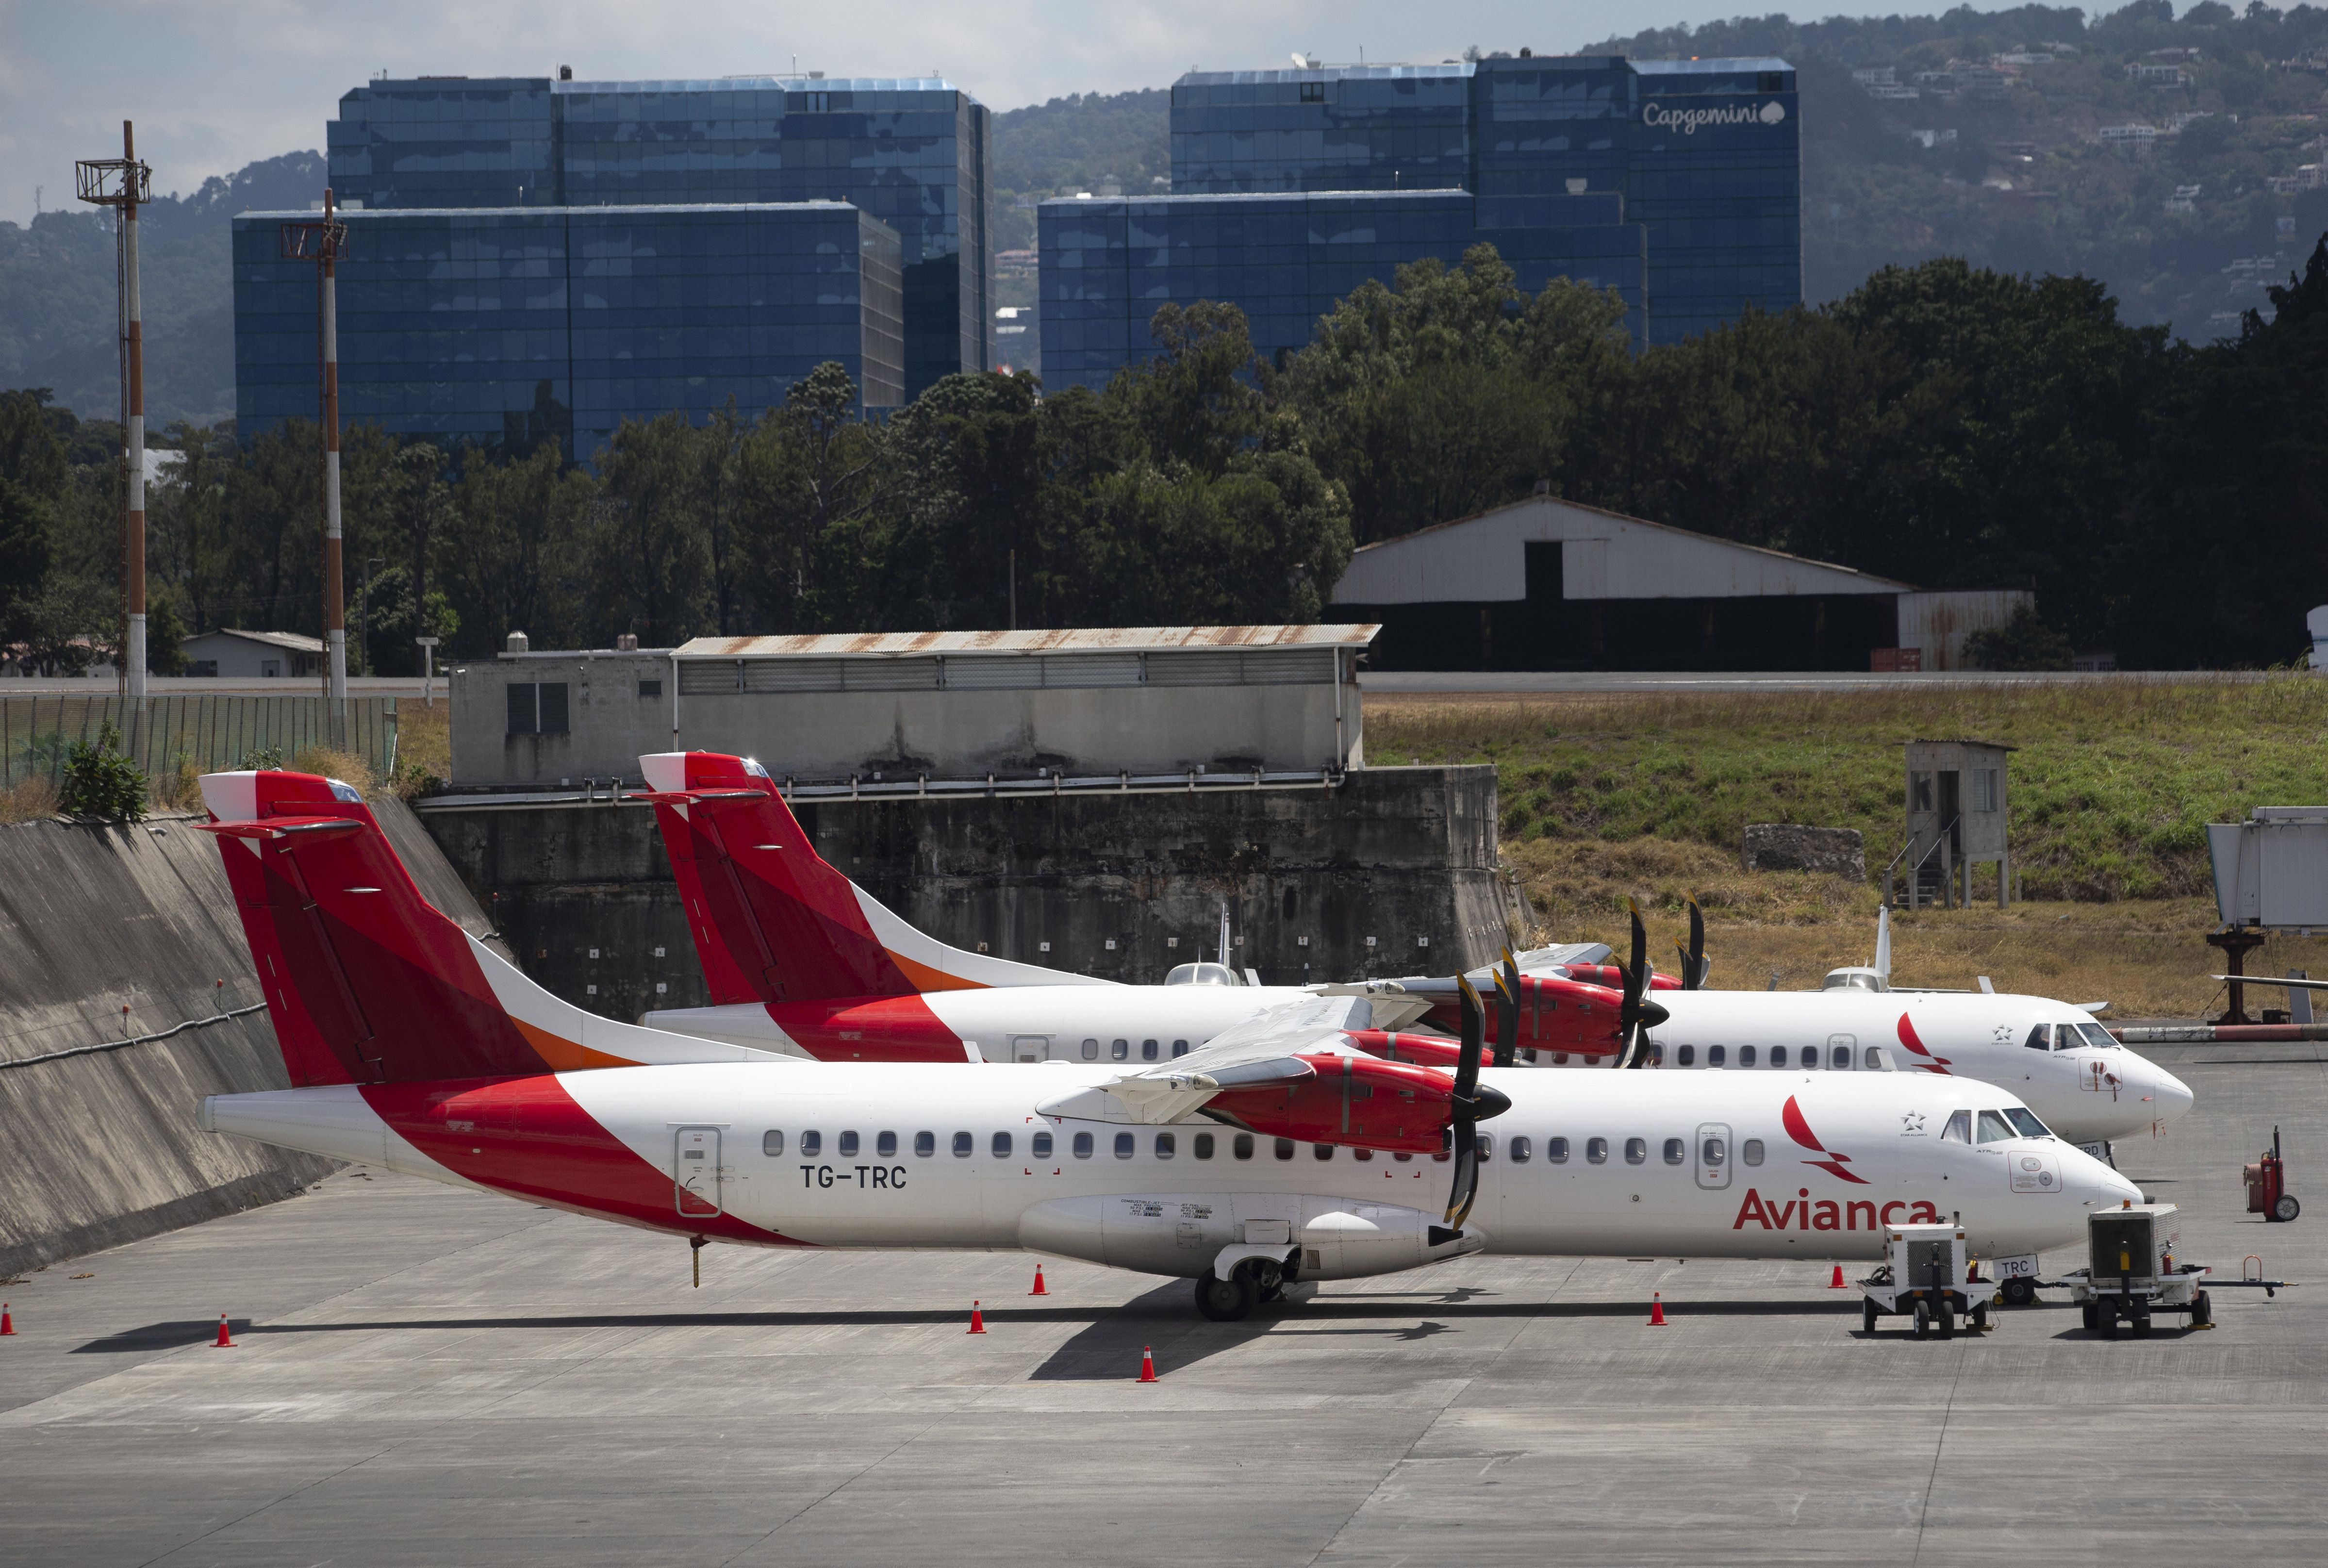 ARCHIVO - En esta foto de archivo del 17 de marzo de 2020, aviones de la aerolínea Avianca estacionados en el aeropuerto La Aurora en Ciudad de Guatemala. (AP Foto/Moisés Castillo, Archivo)